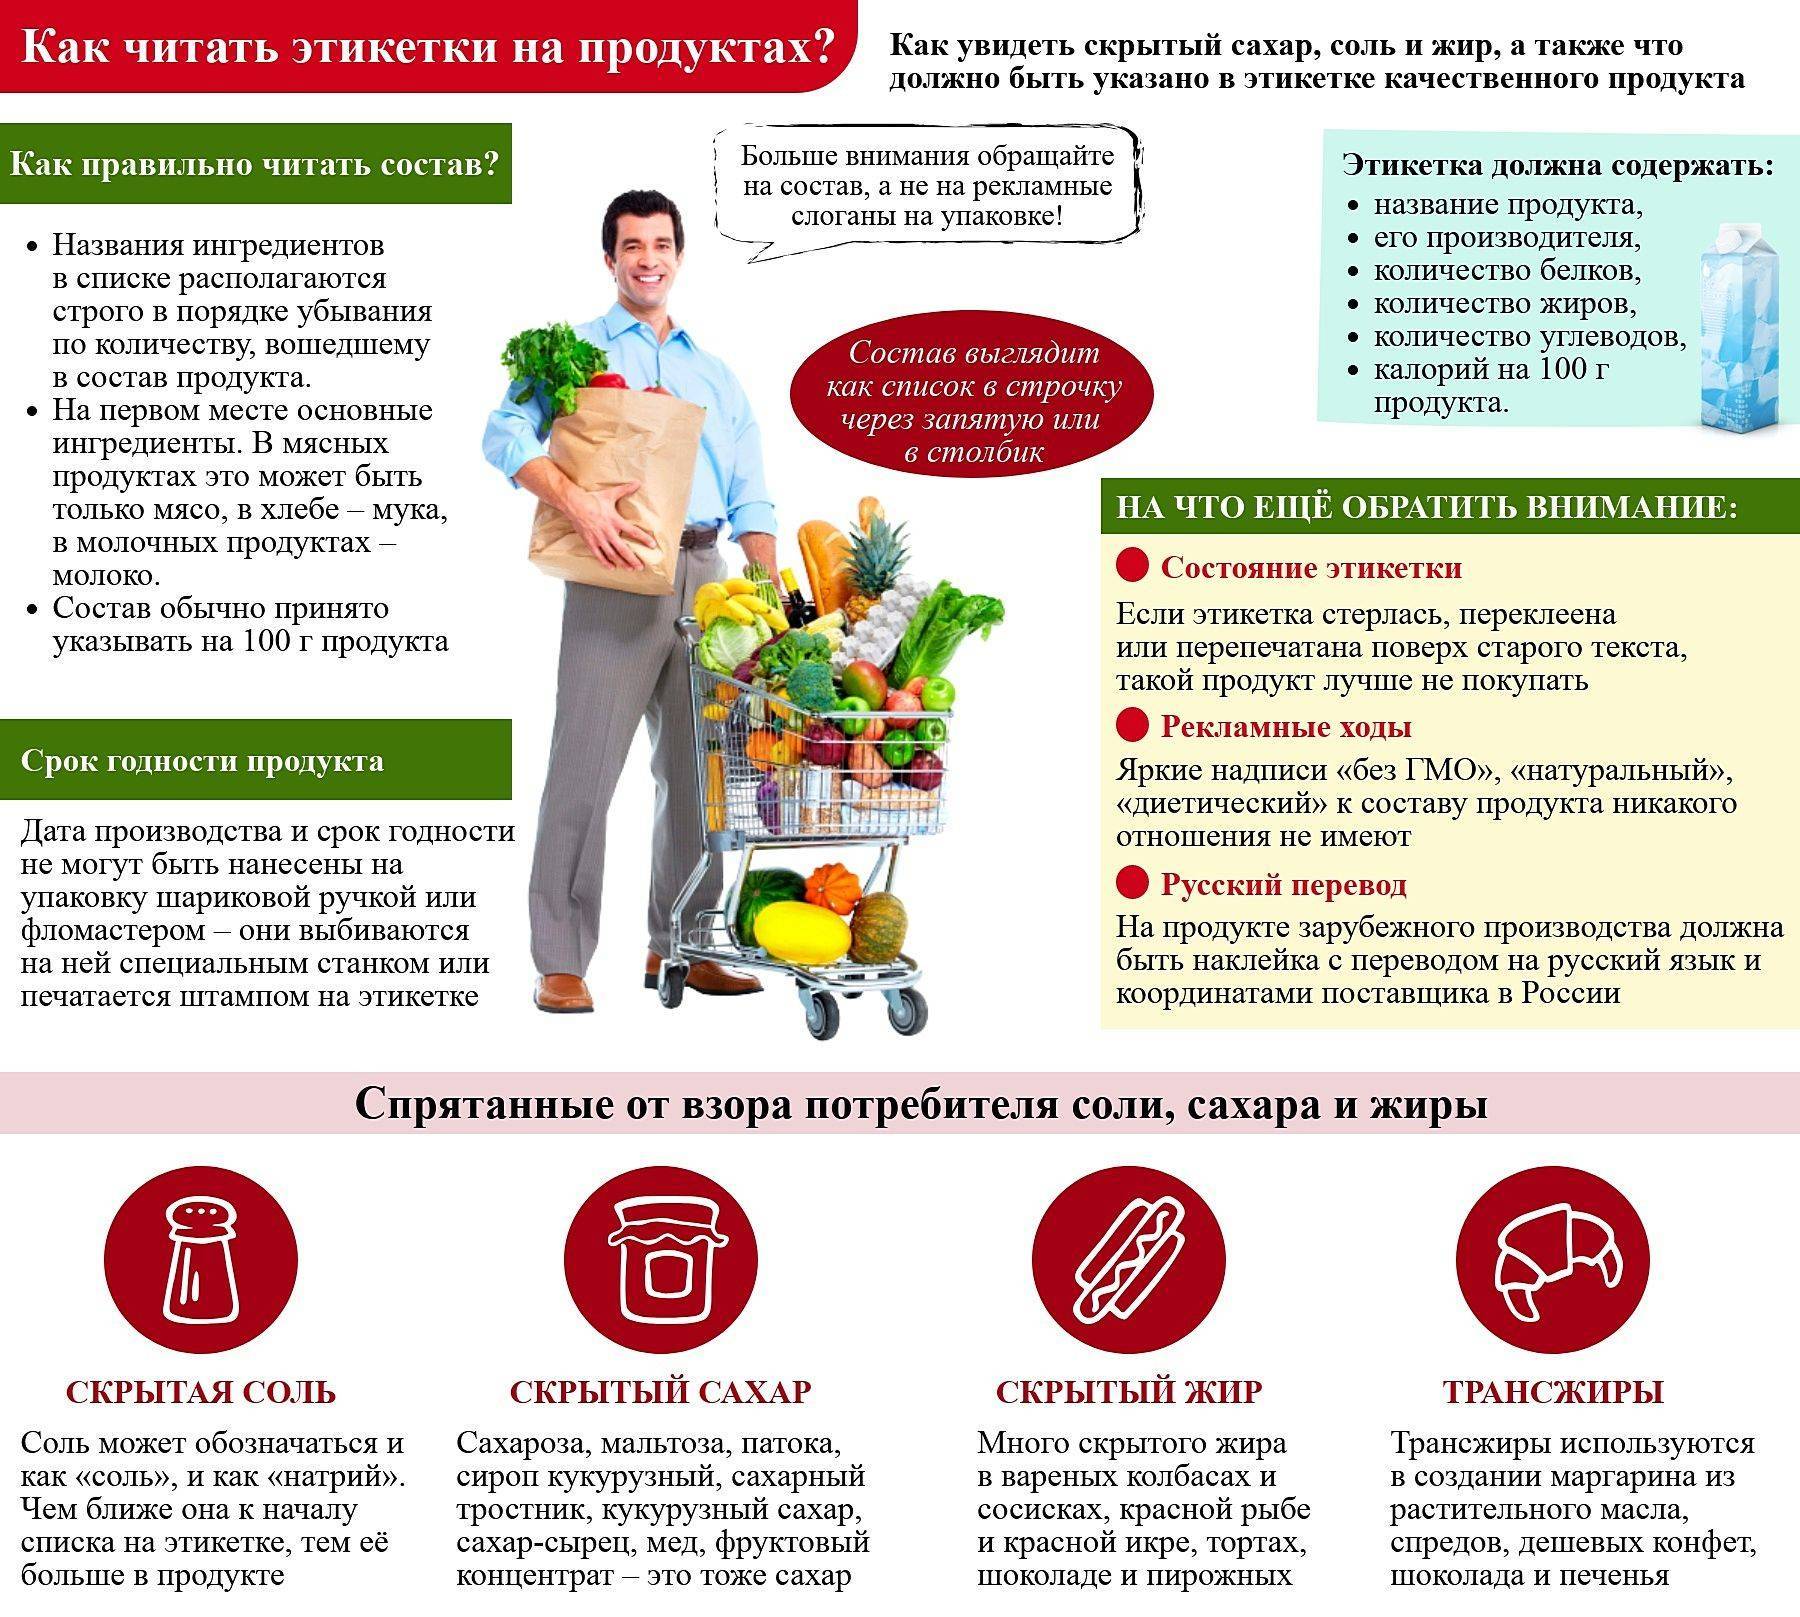 Как правильно читать этикетки продуктов: обязательная информация | food and health